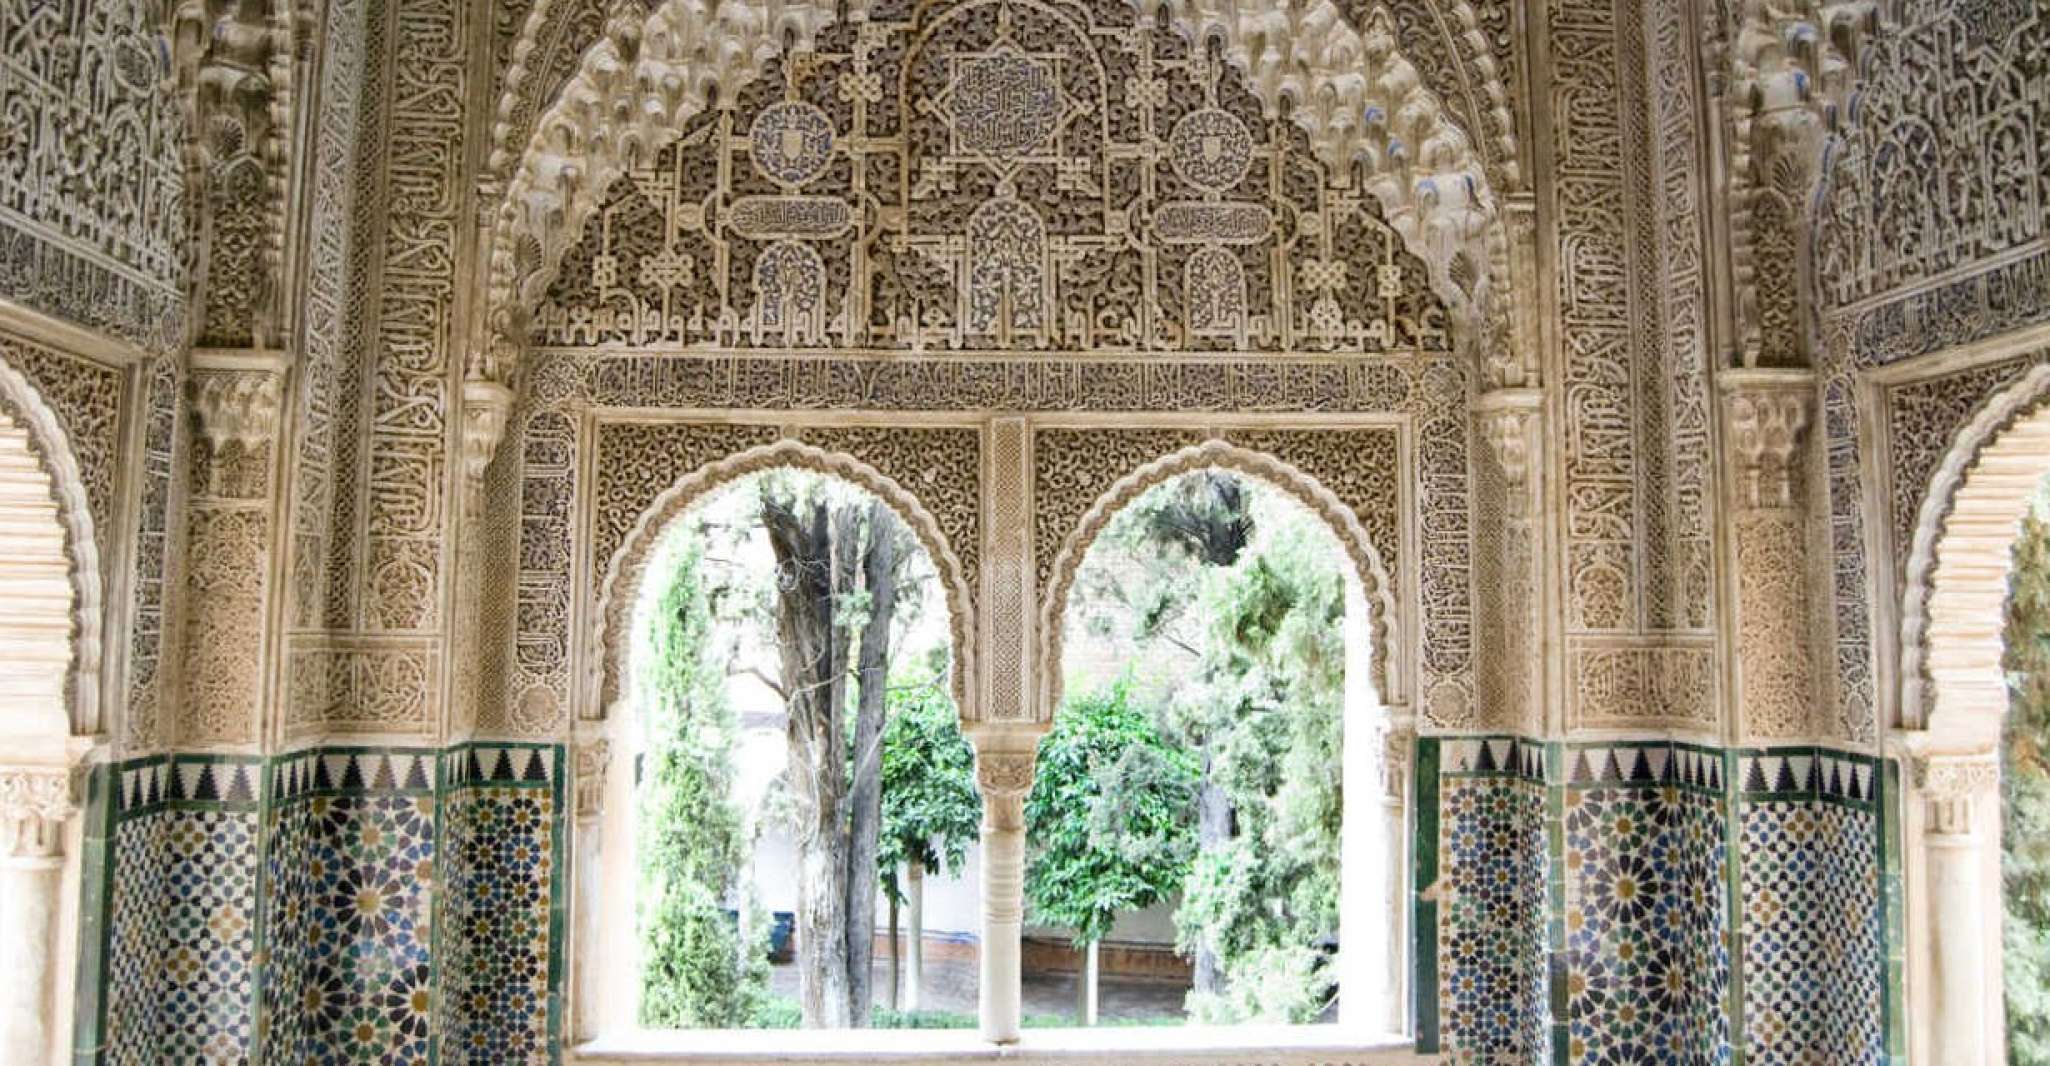 Nerja/Torrox/Almuñécar, Granada Day Trip with Alhambra - Housity